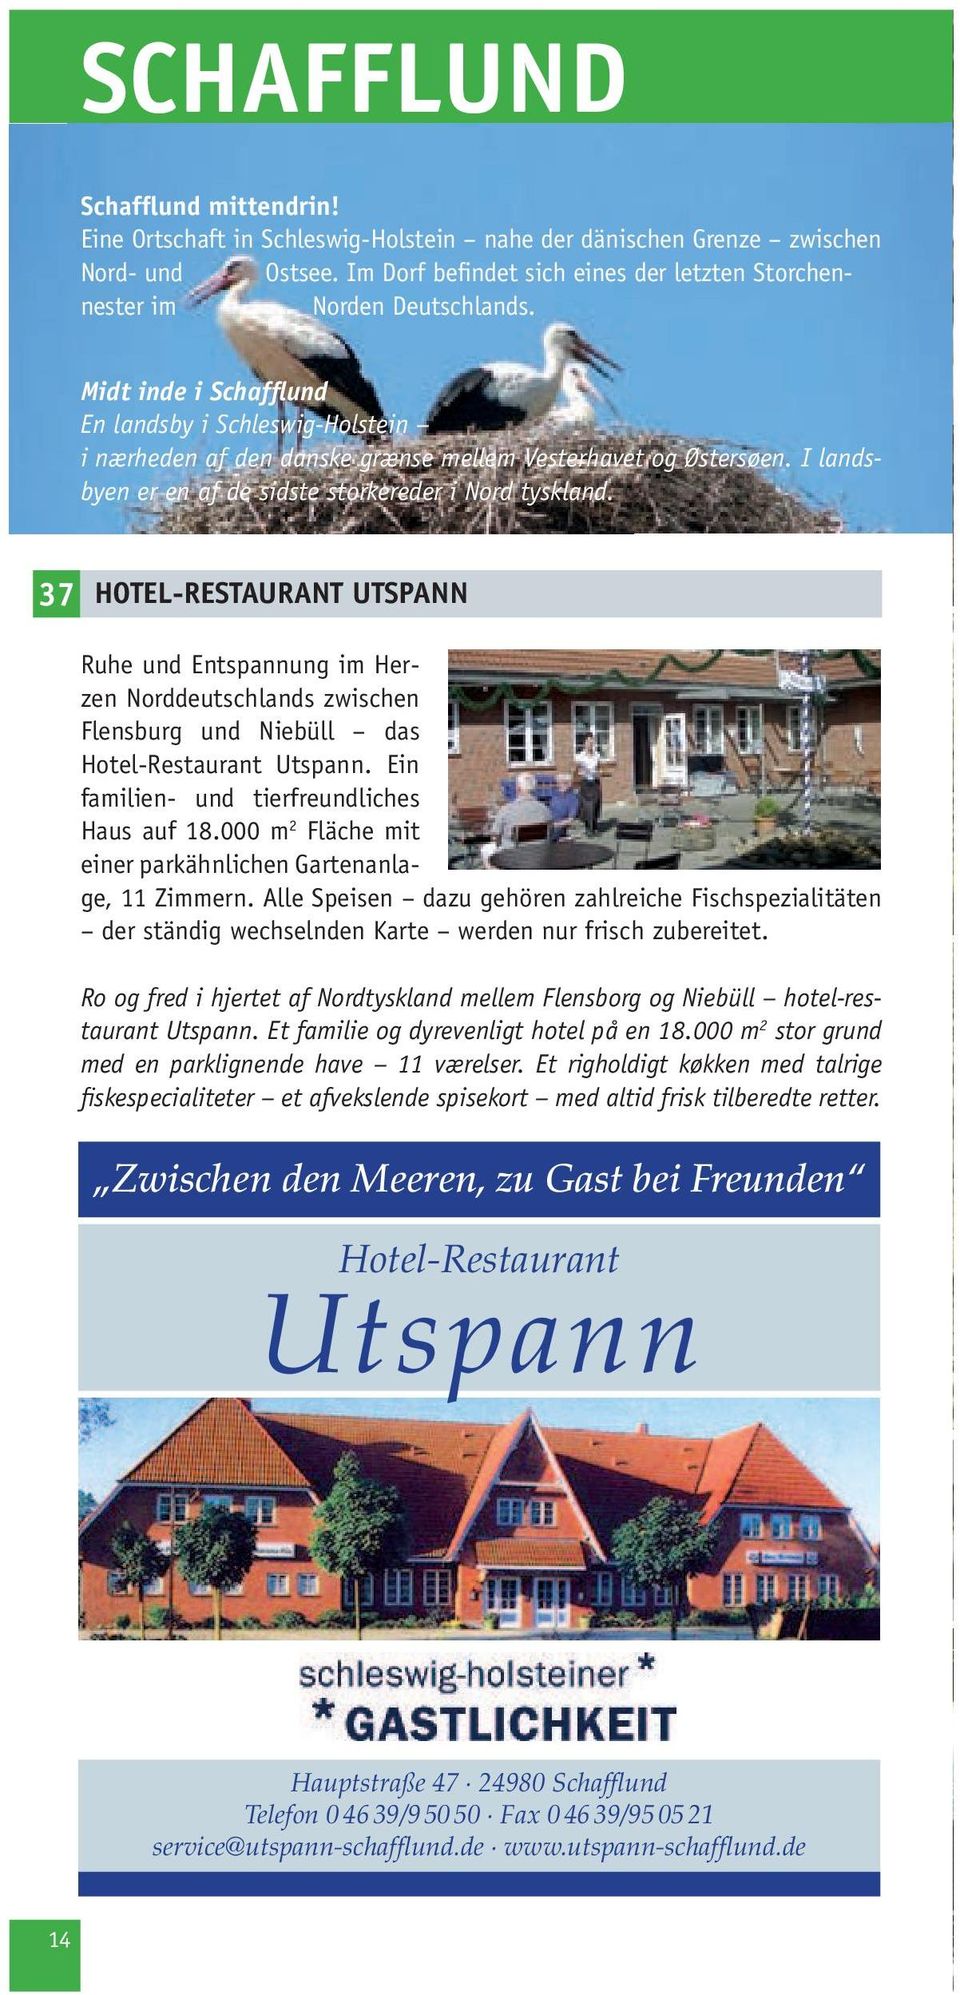 I landsbyen er en af de sidste storkereder i Nord tyskland. 37 HOTEL-RESTAURANT UTSPANN Ruhe und Entspannung im Herzen Norddeutschlands zwischen Flensburg und Niebüll das Hotel-Restaurant Utspann.